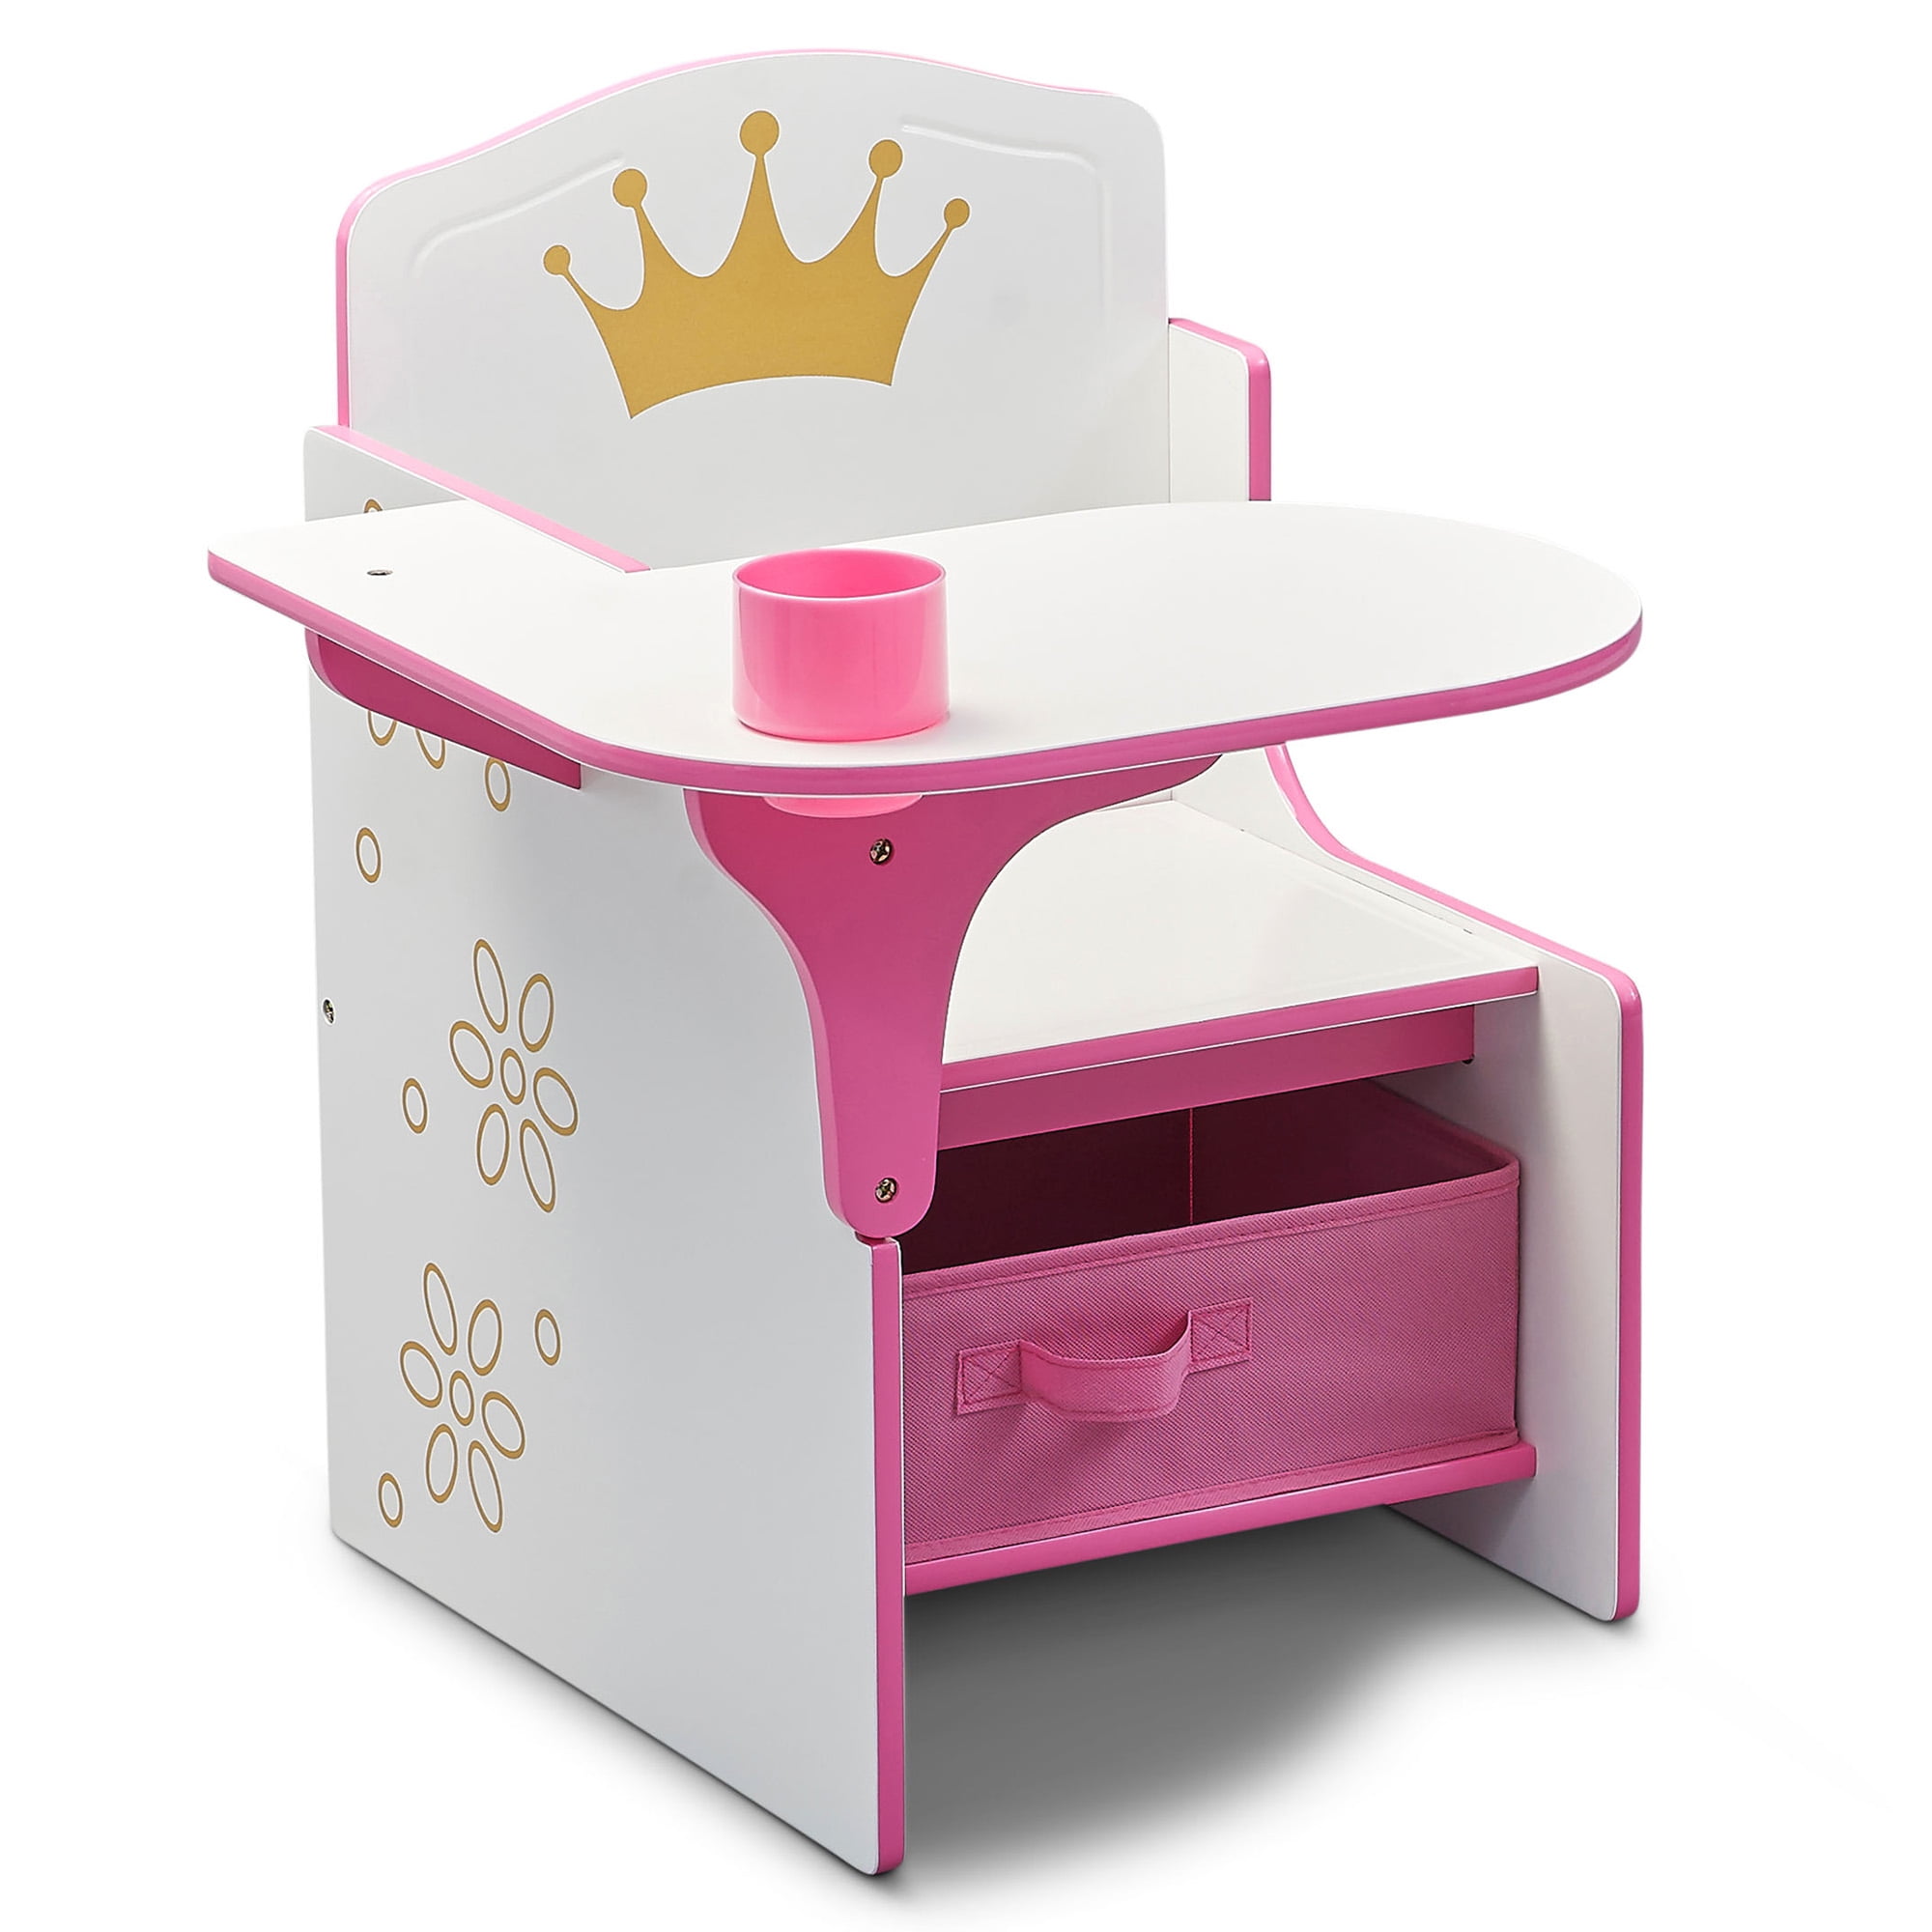 Delta Children Princess Crown Chair Desk with Storage Bin, Greenguard Gold Certified - 3